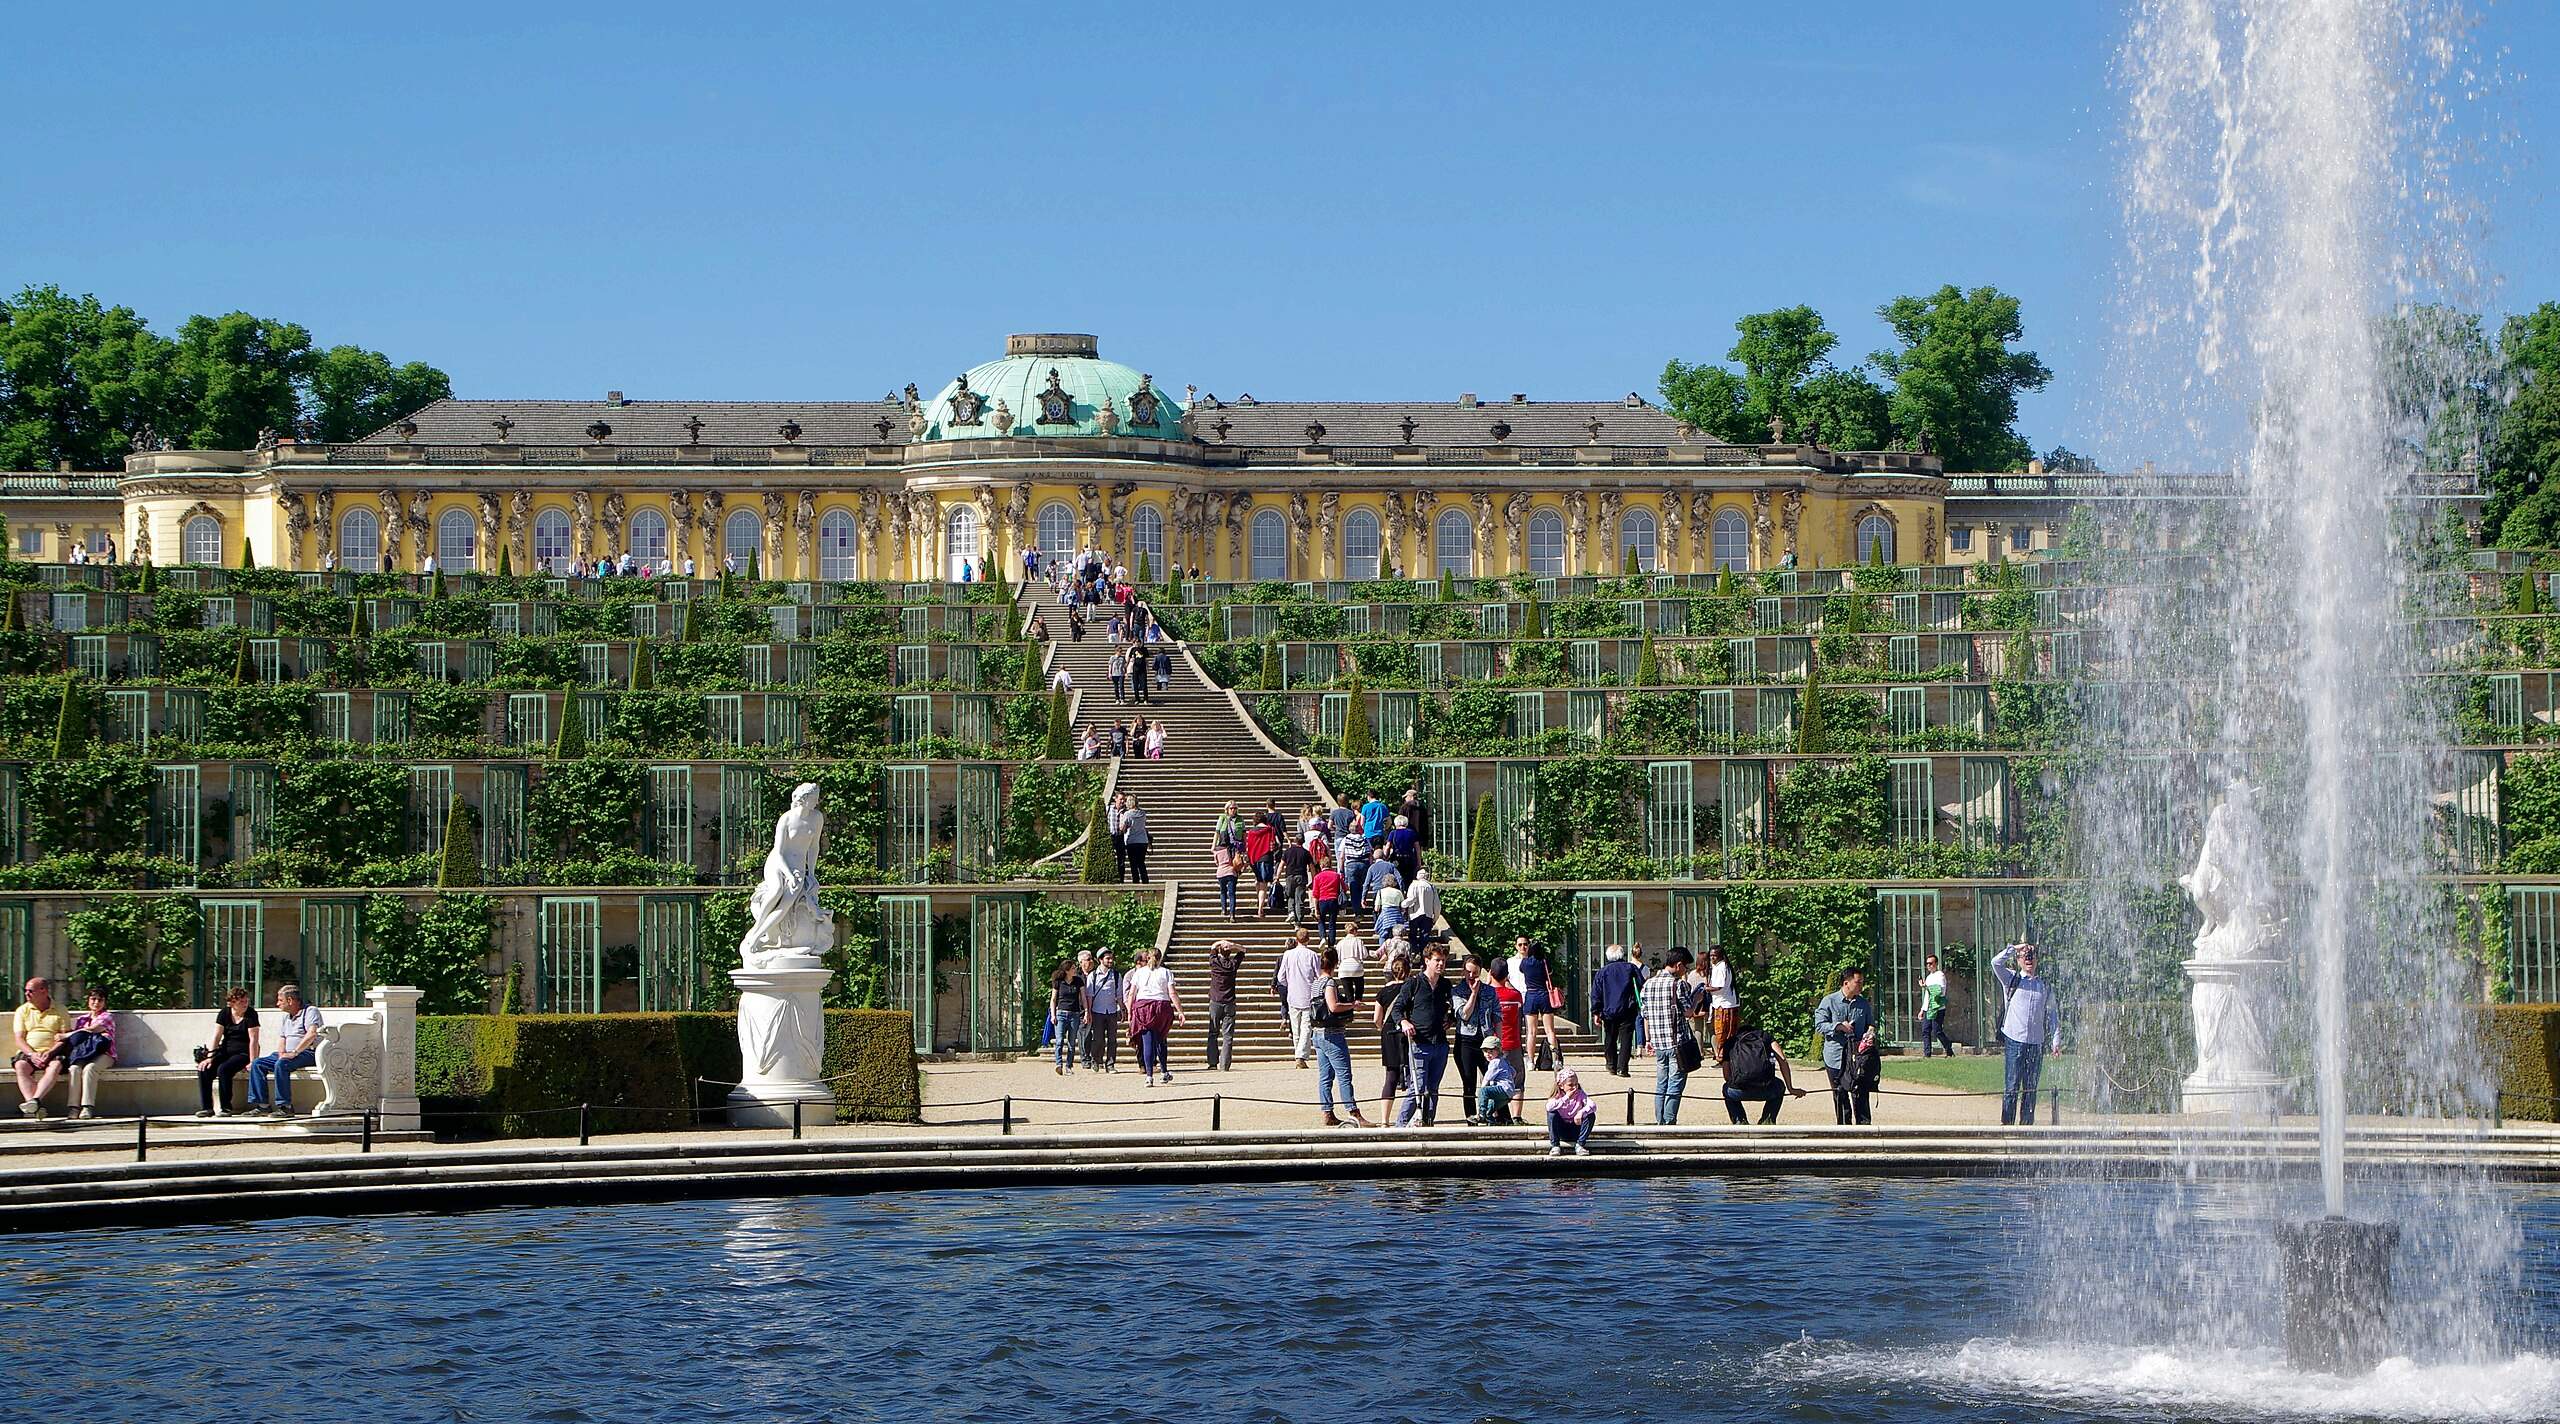 Le palais et le parc de Sans-souci, ou Sanssouci, à Potsdam  - Page 2 2560px17